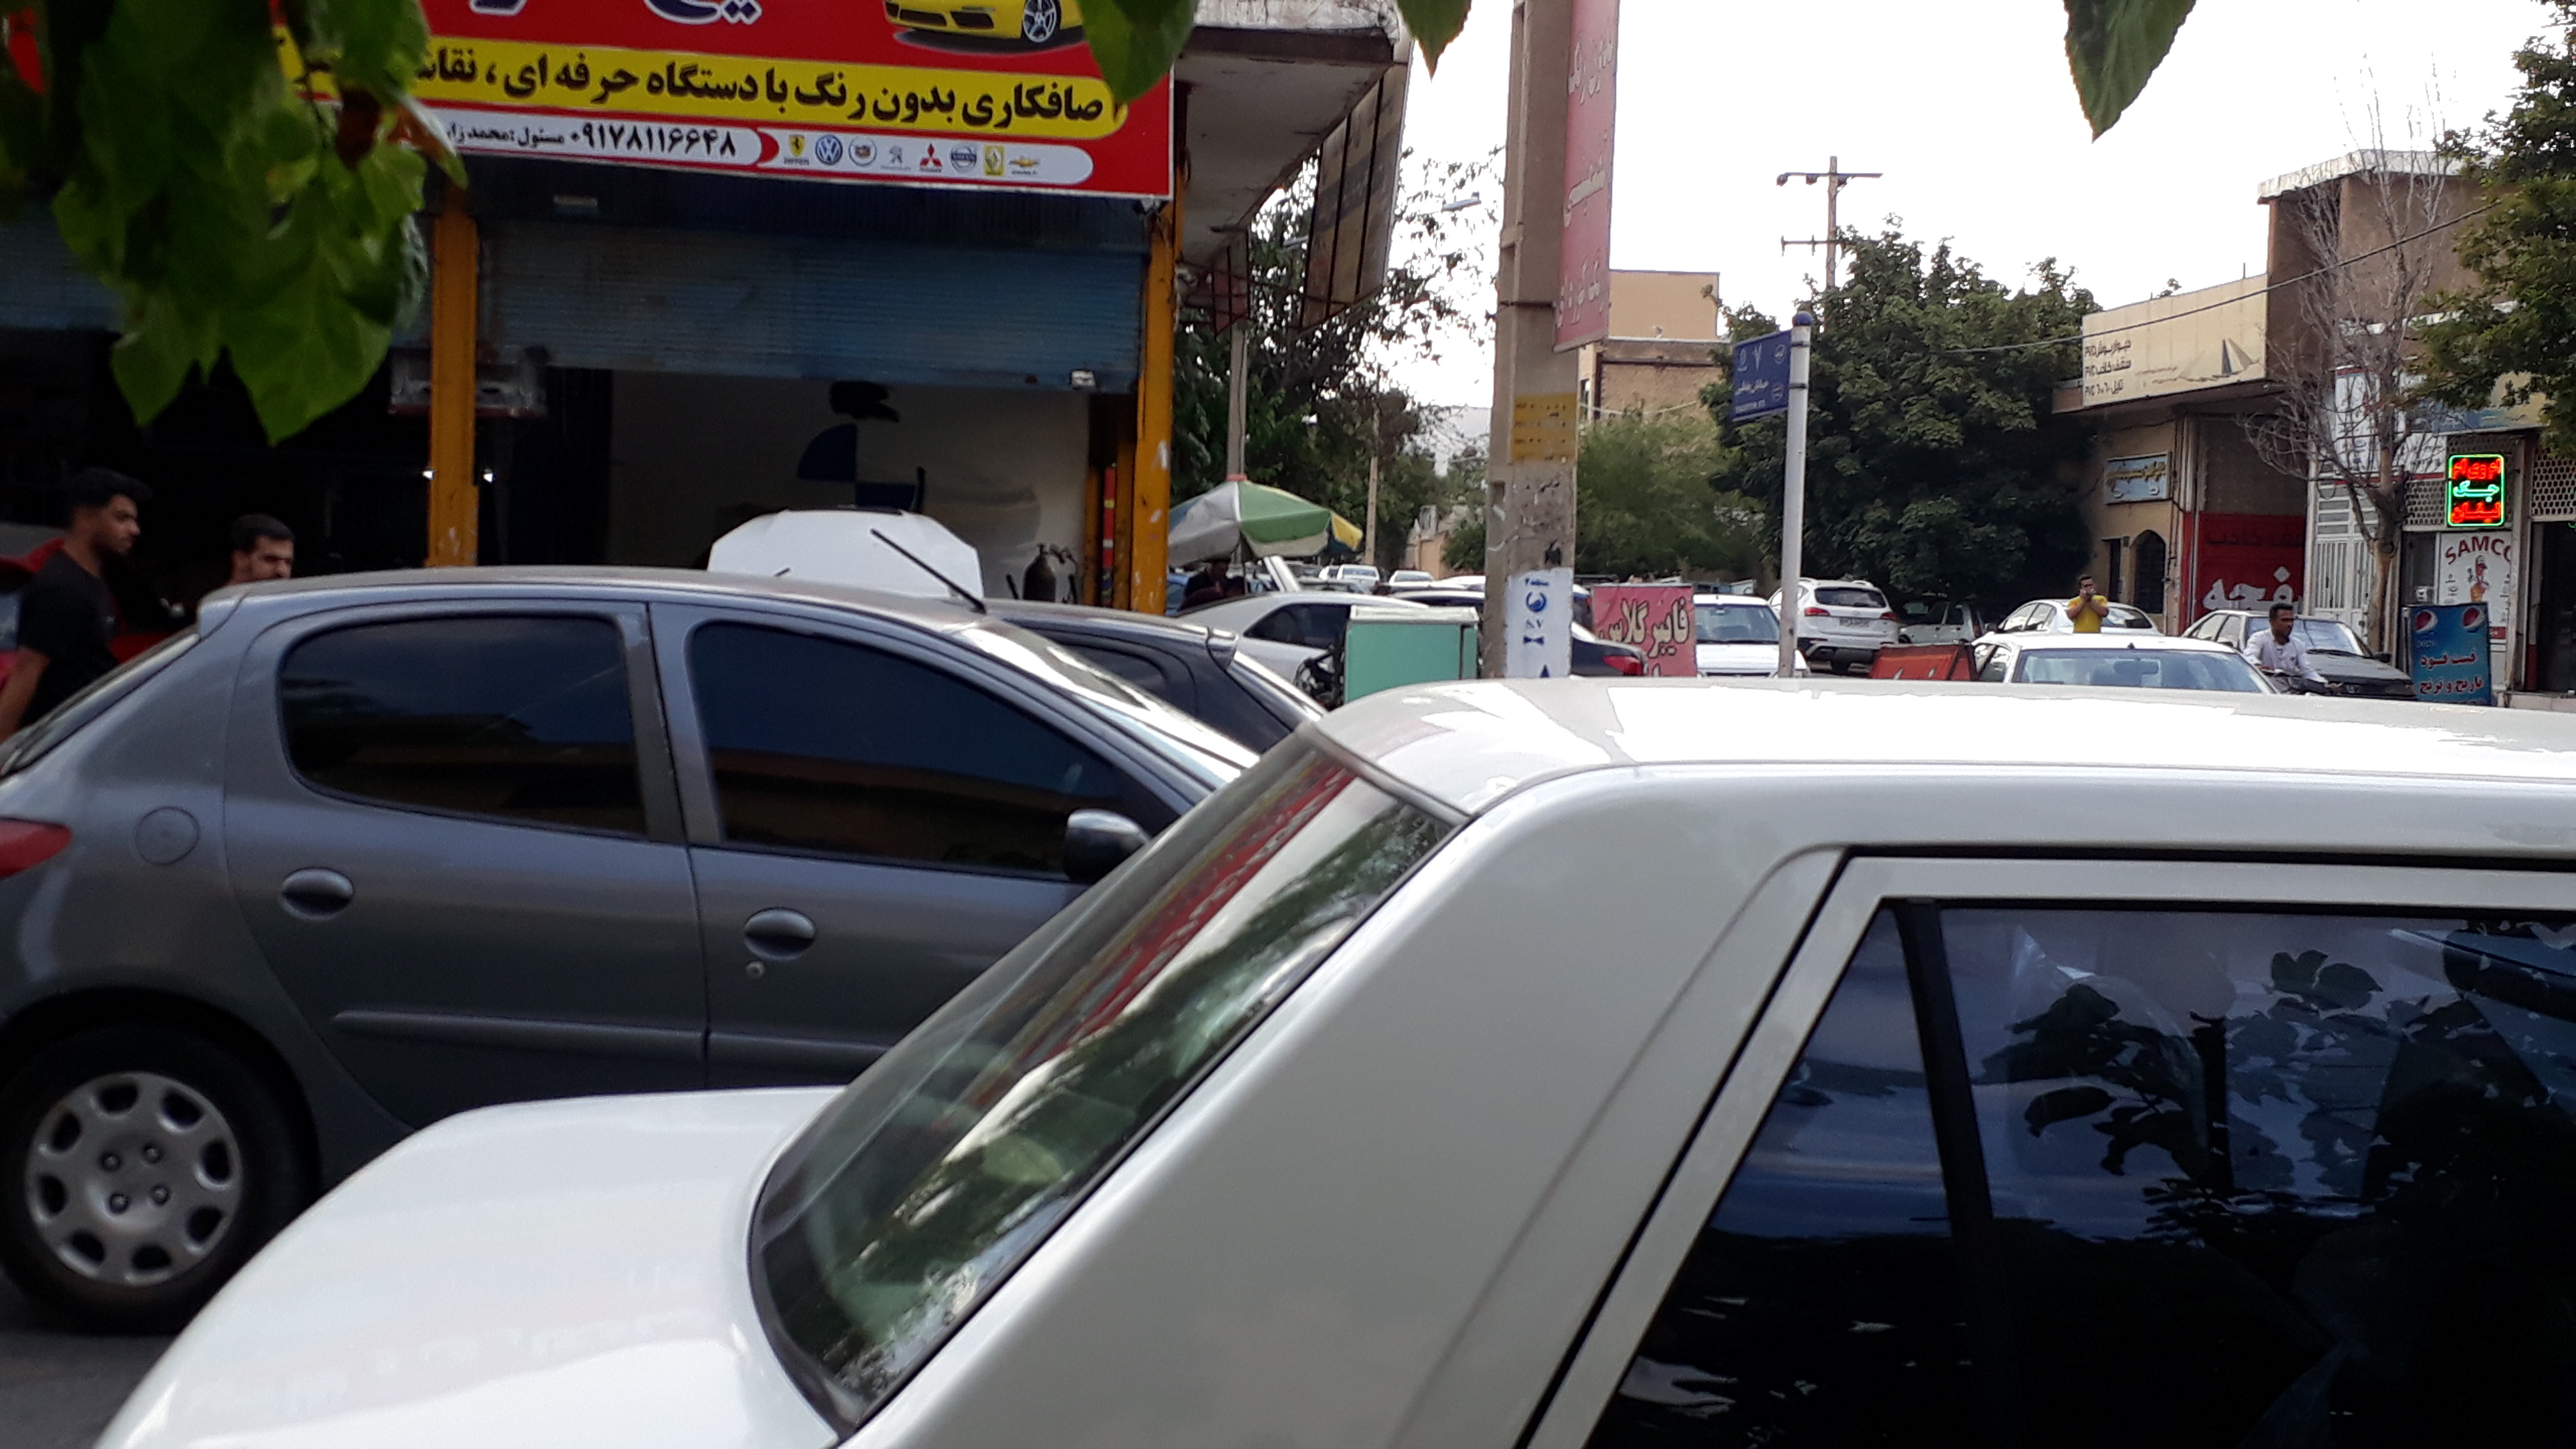 مکانیک کارانی که سیاه چرکی پیاده رو ها و خیابان ها را رقم می زنند/ سایت مشاغل مزاحم در هاله ای از ابهام؛بی توجهی شهرداری شیراز